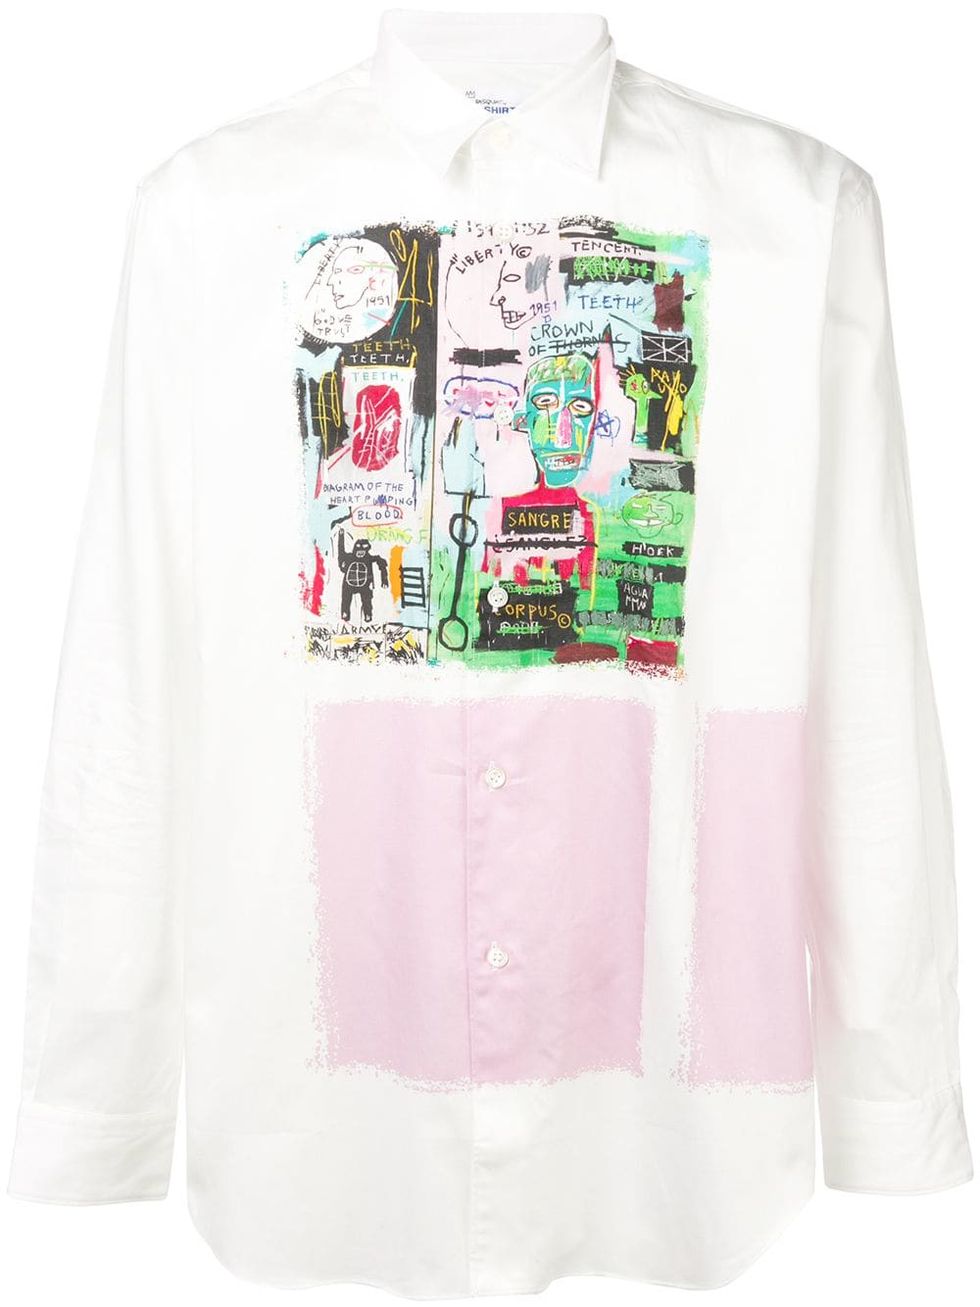 The Comme des Garçons Shirt x Basquiat Collab Is an Actual Work of Art